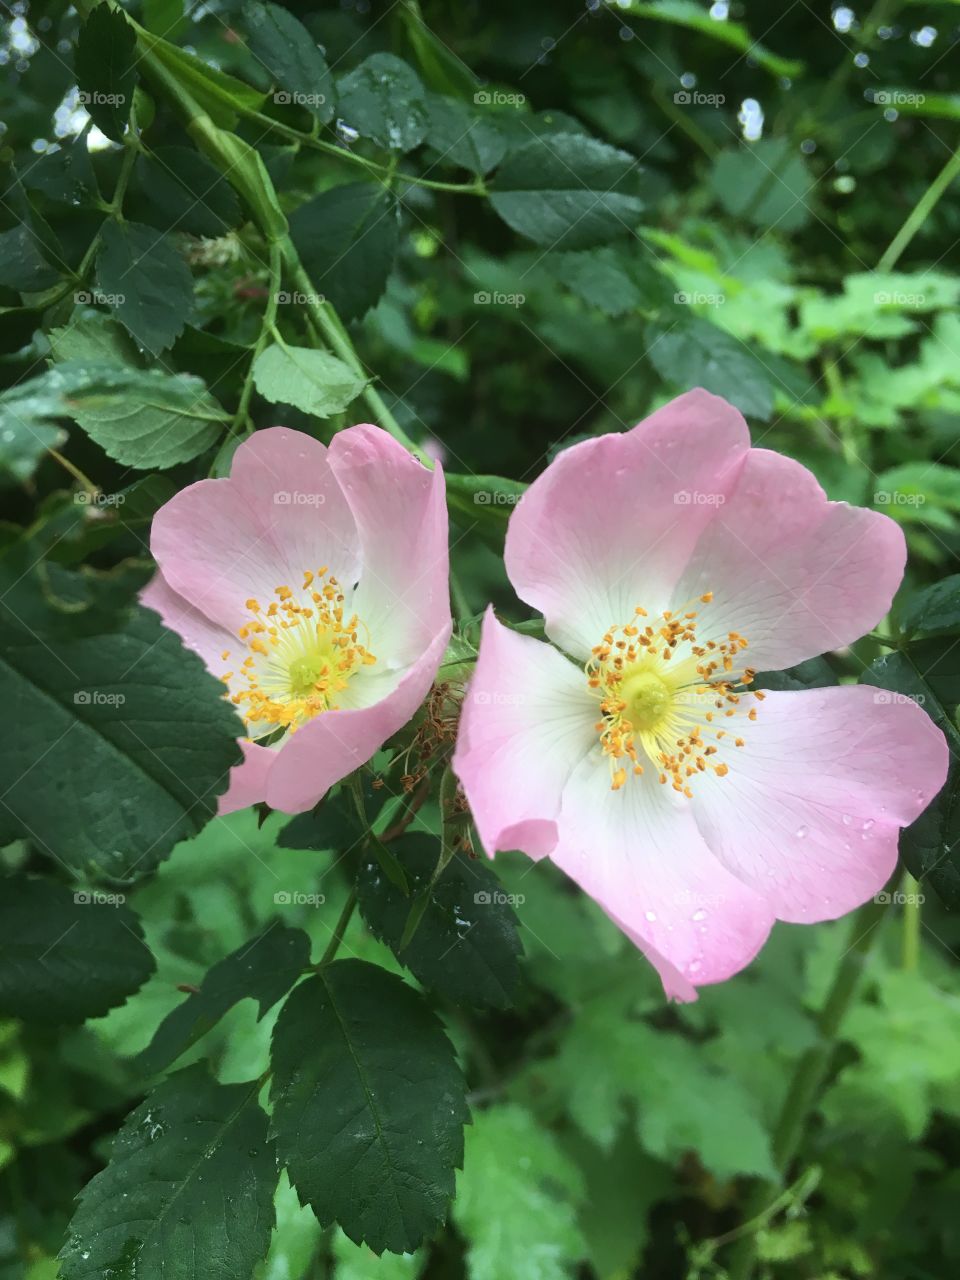 Wild English rose